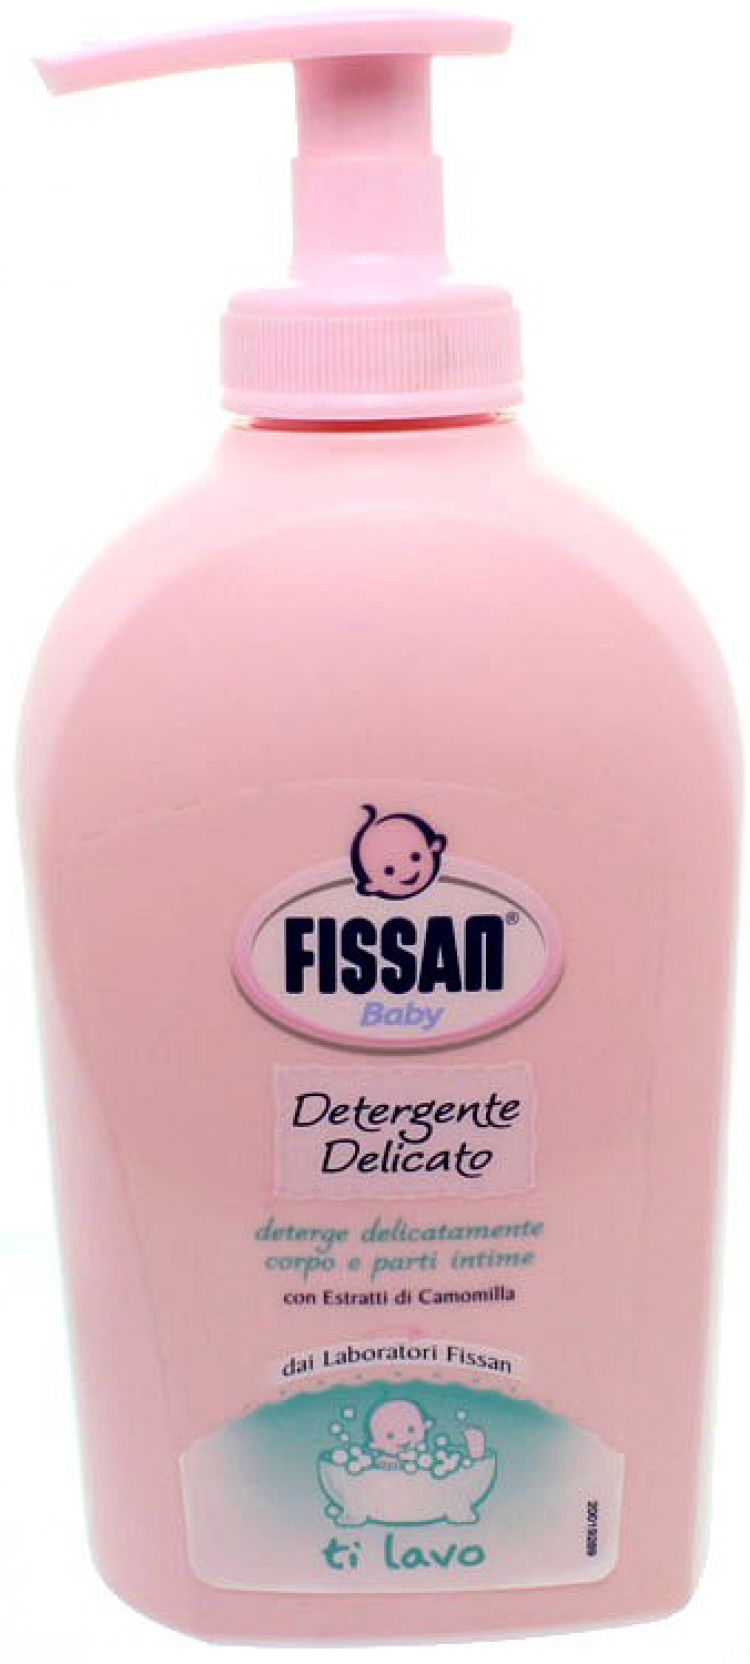 Fissan baby detergente delicato sapone liquido - 300ml